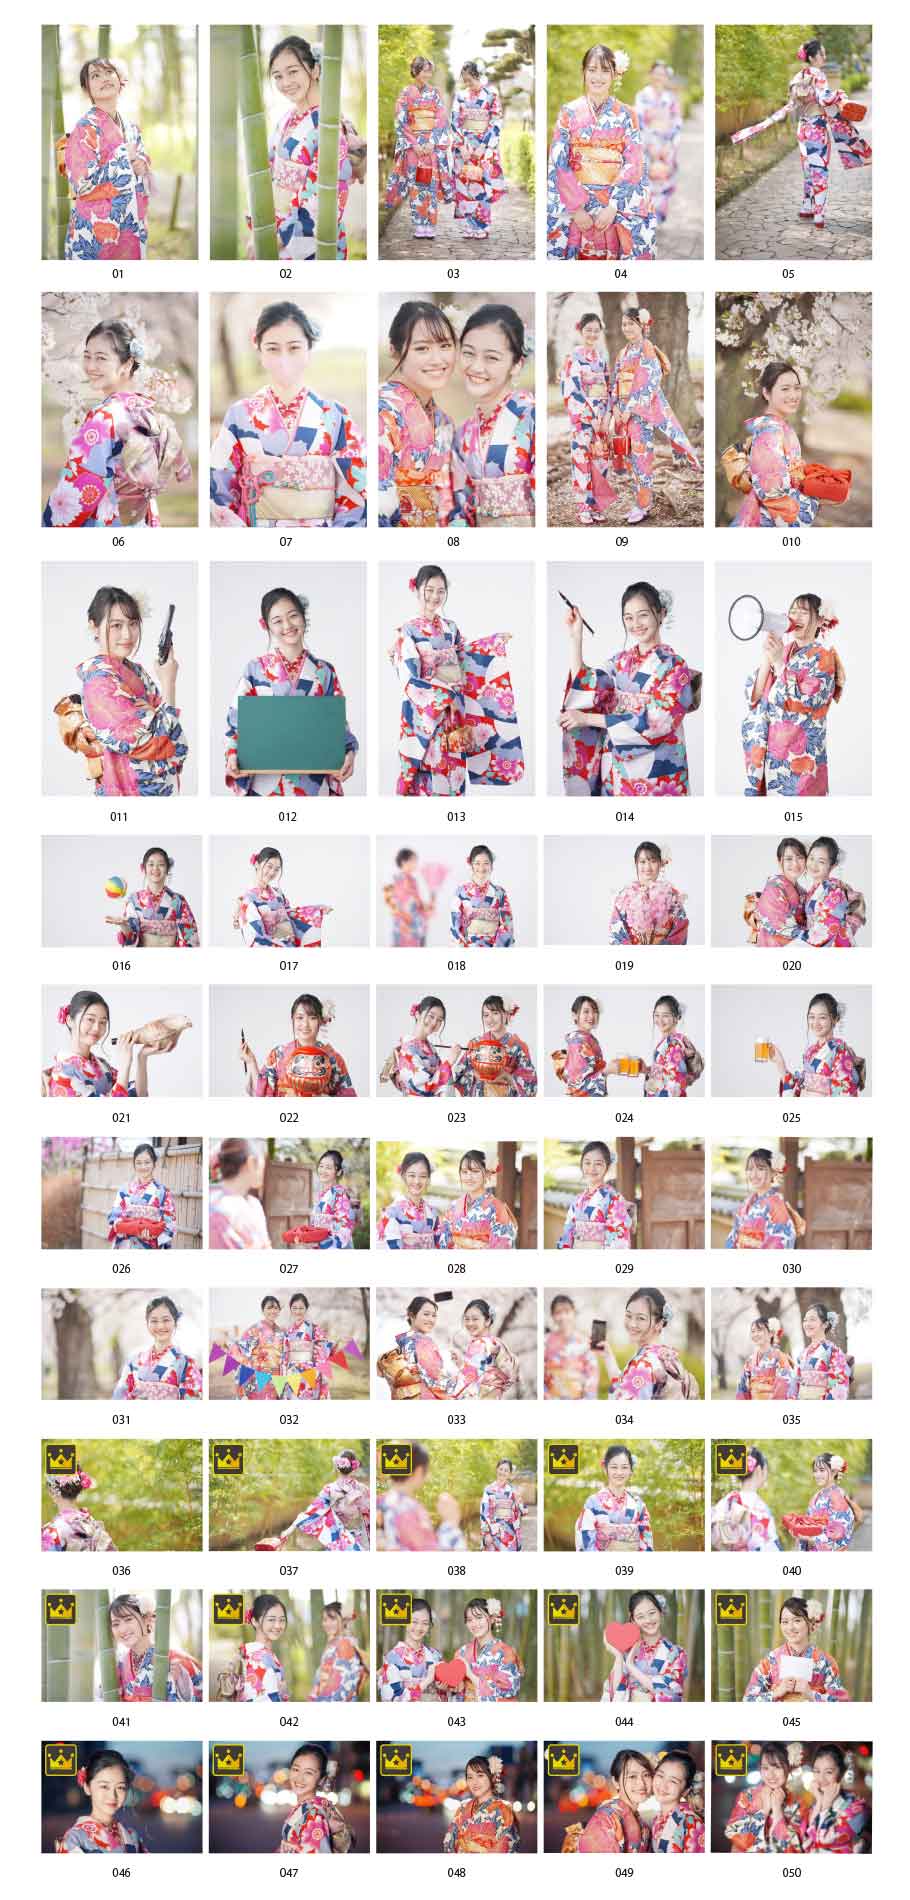 日本年輕女性穿著和服的照片